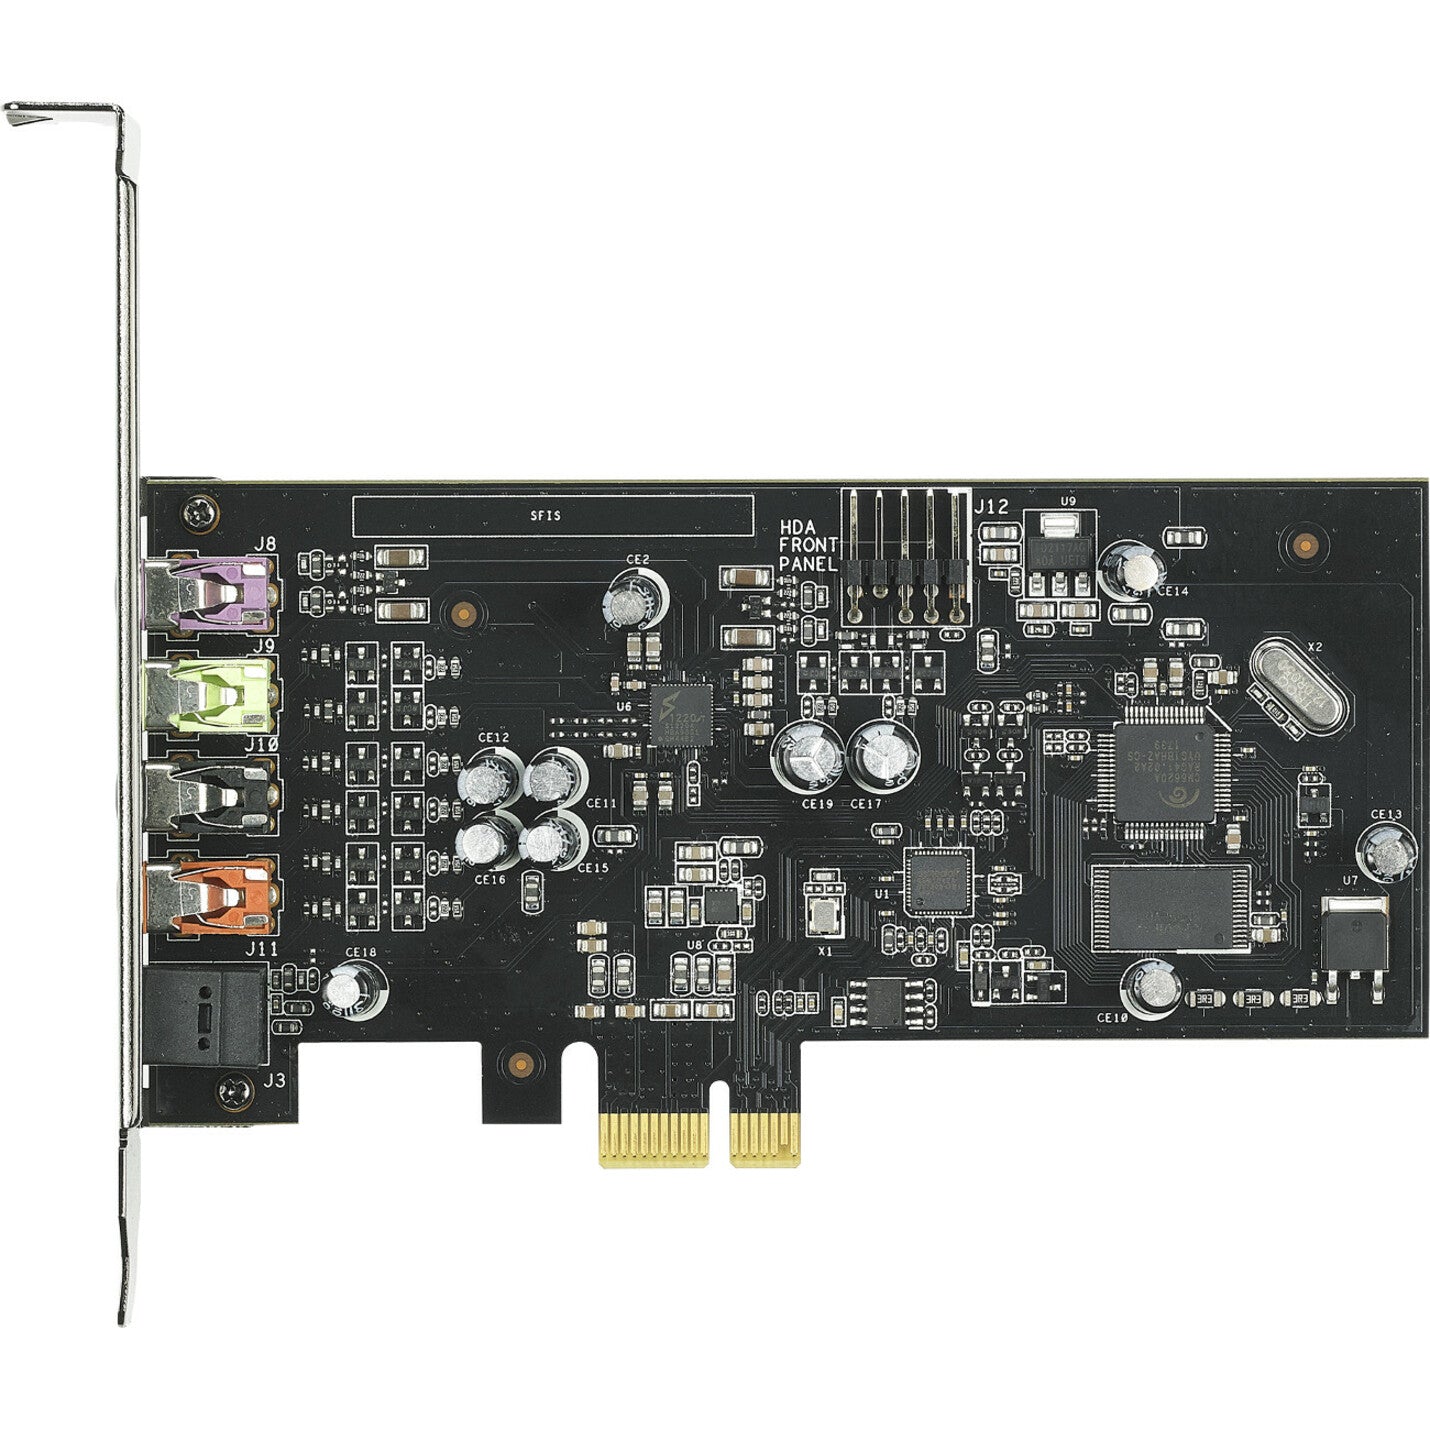 Asus XONAR SE Sound Board 5.1 Channel PCI Express 24-bit 192 kHz Internal Sound Card